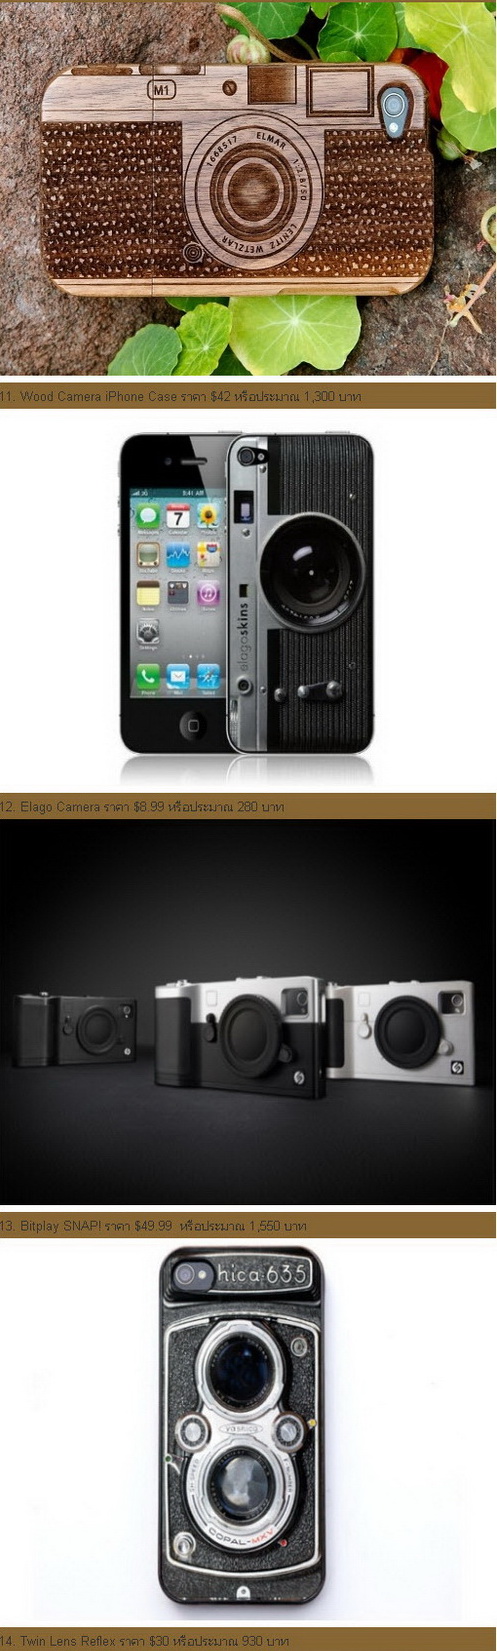 แนะนำ 19 เคส iPhone 4S สุดแจ่ม เอาใจคนชอบถ่ายรูป